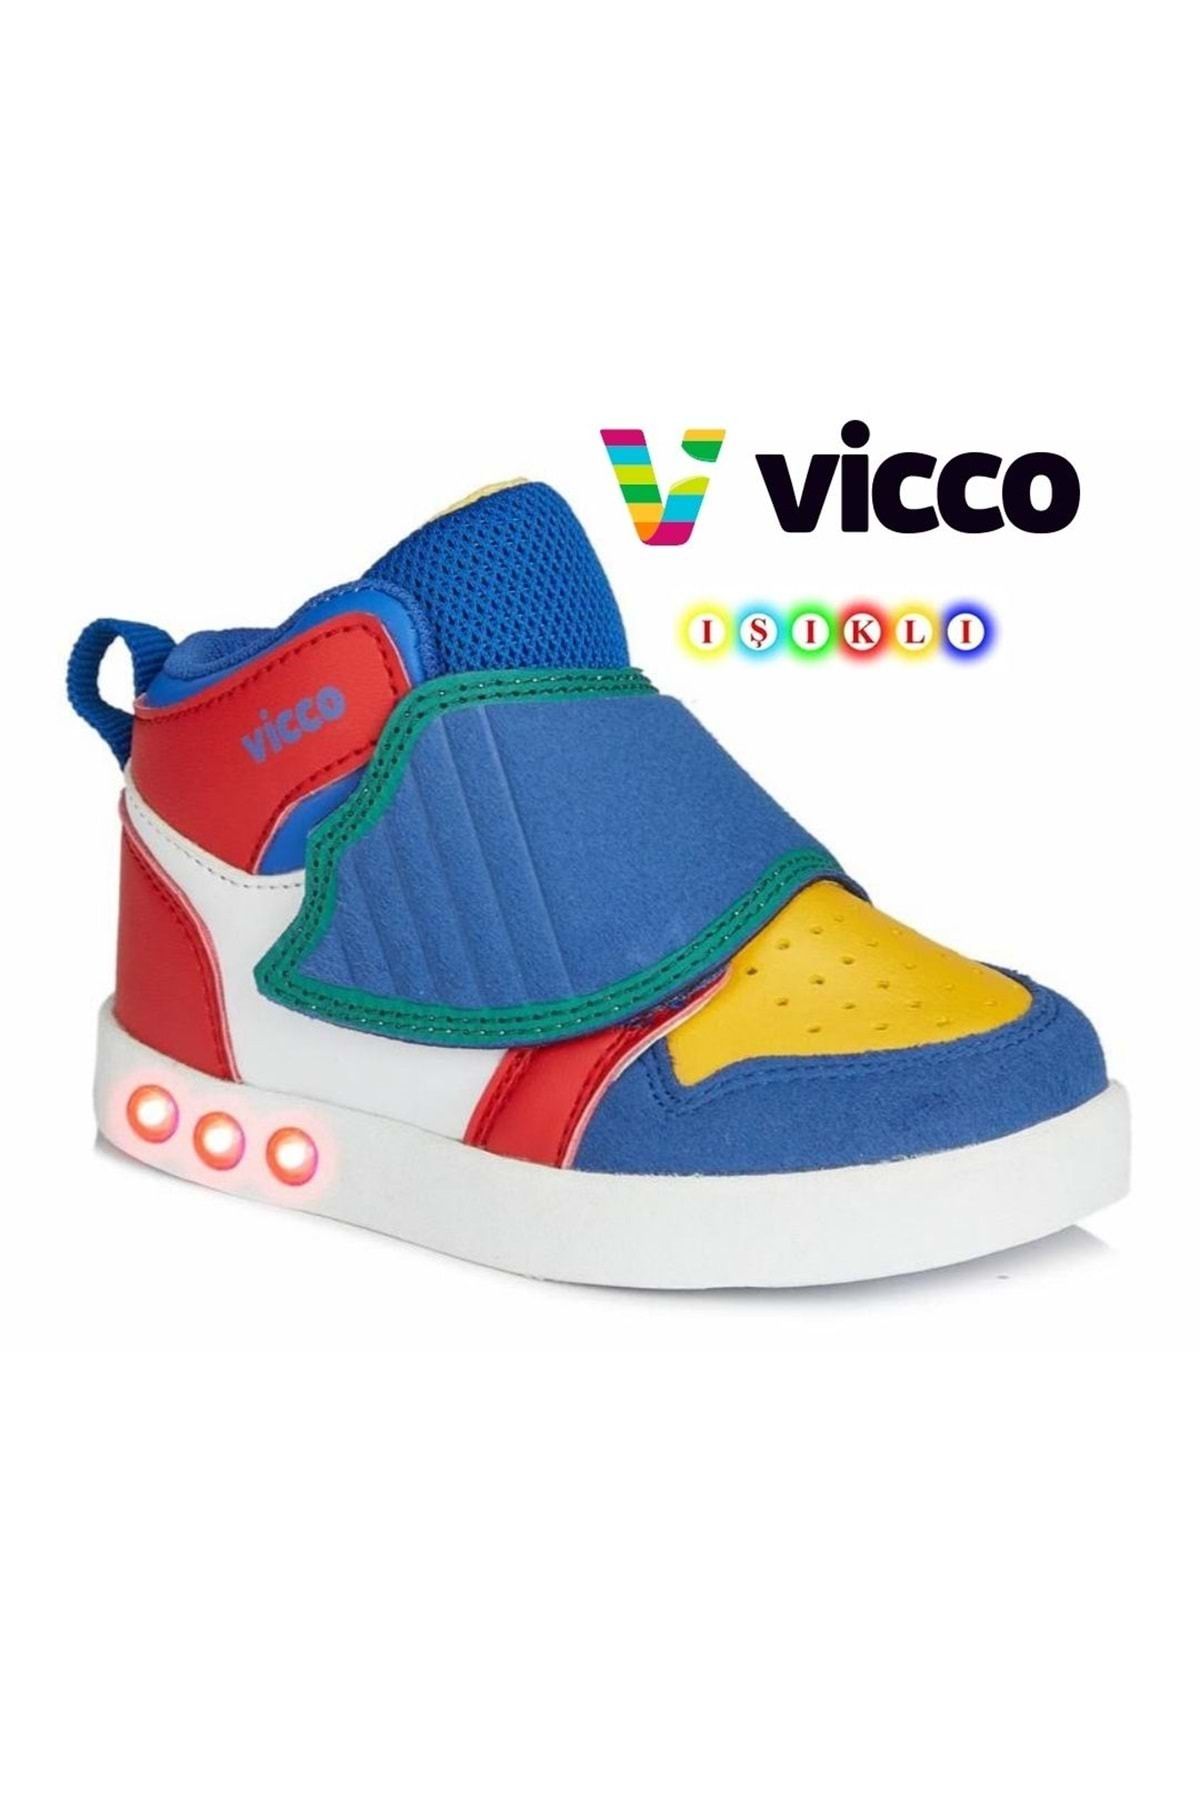 Vicco Işıklı Ortopedik Çocuk Boğazlı Spor Ayakkabı Mavi